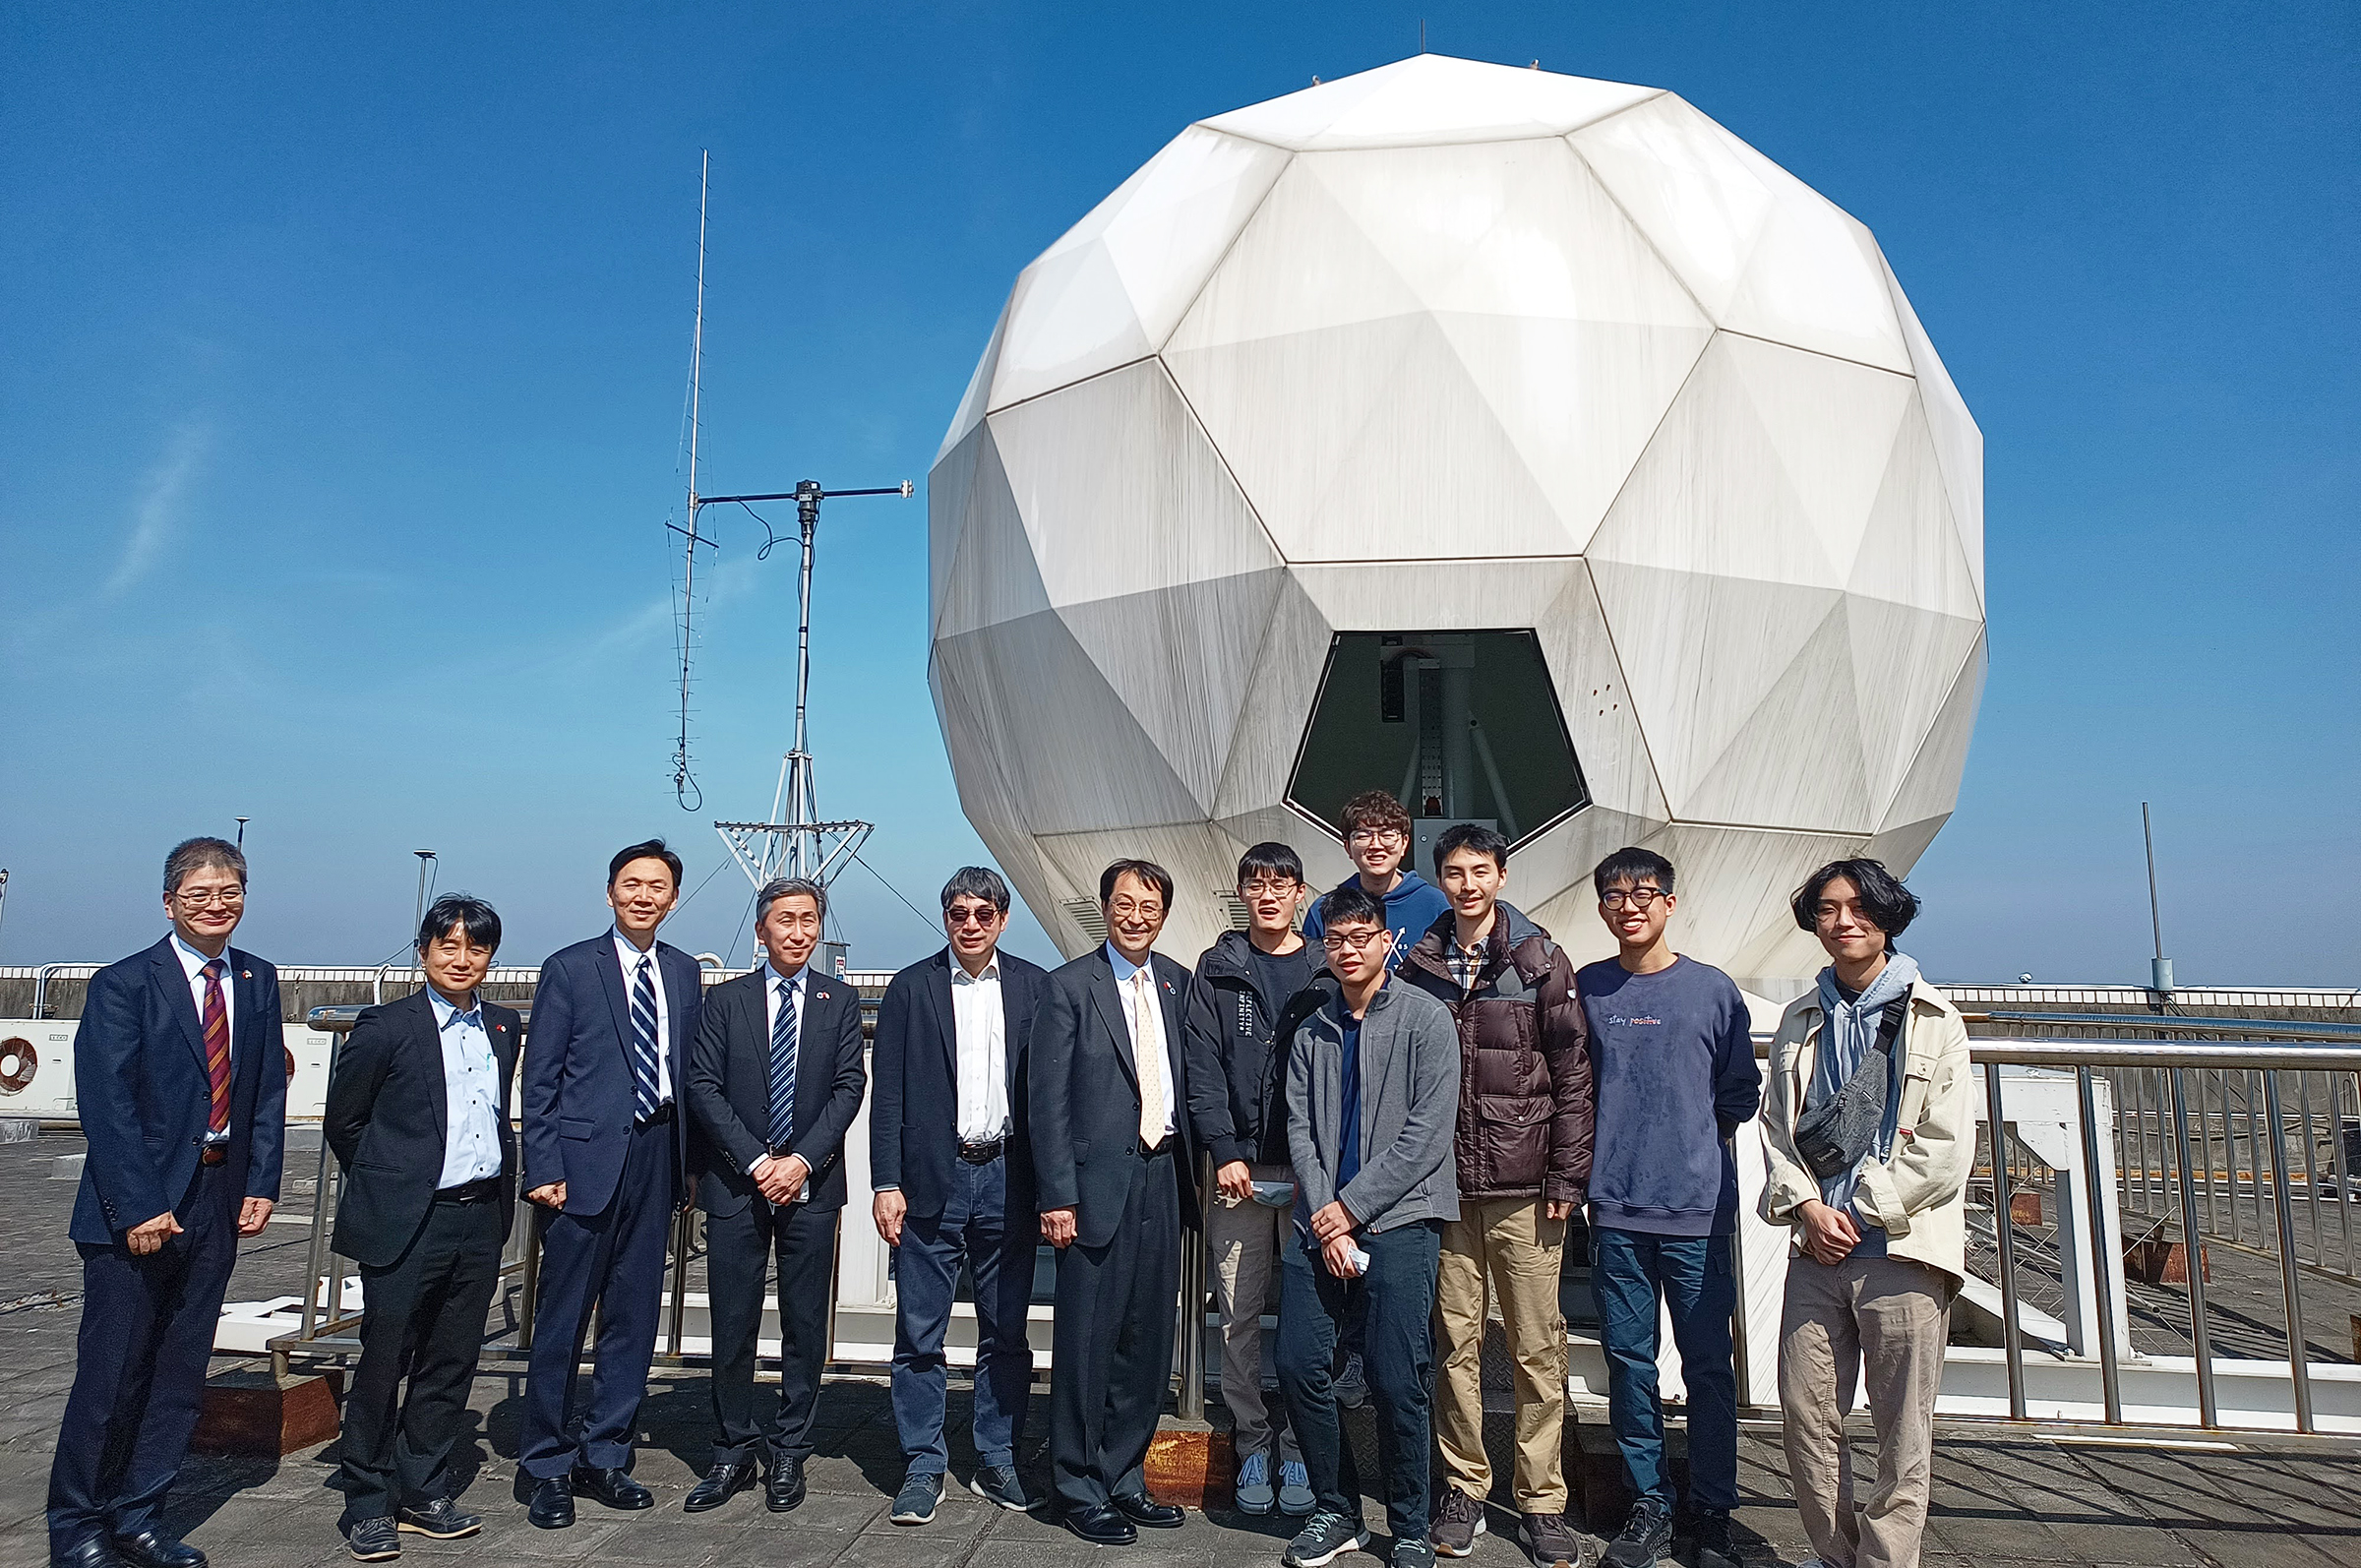 日本筑波大學與台灣中央大學在研究方面有許多共同點，如太空科學的衛星研究。照片國際處提供